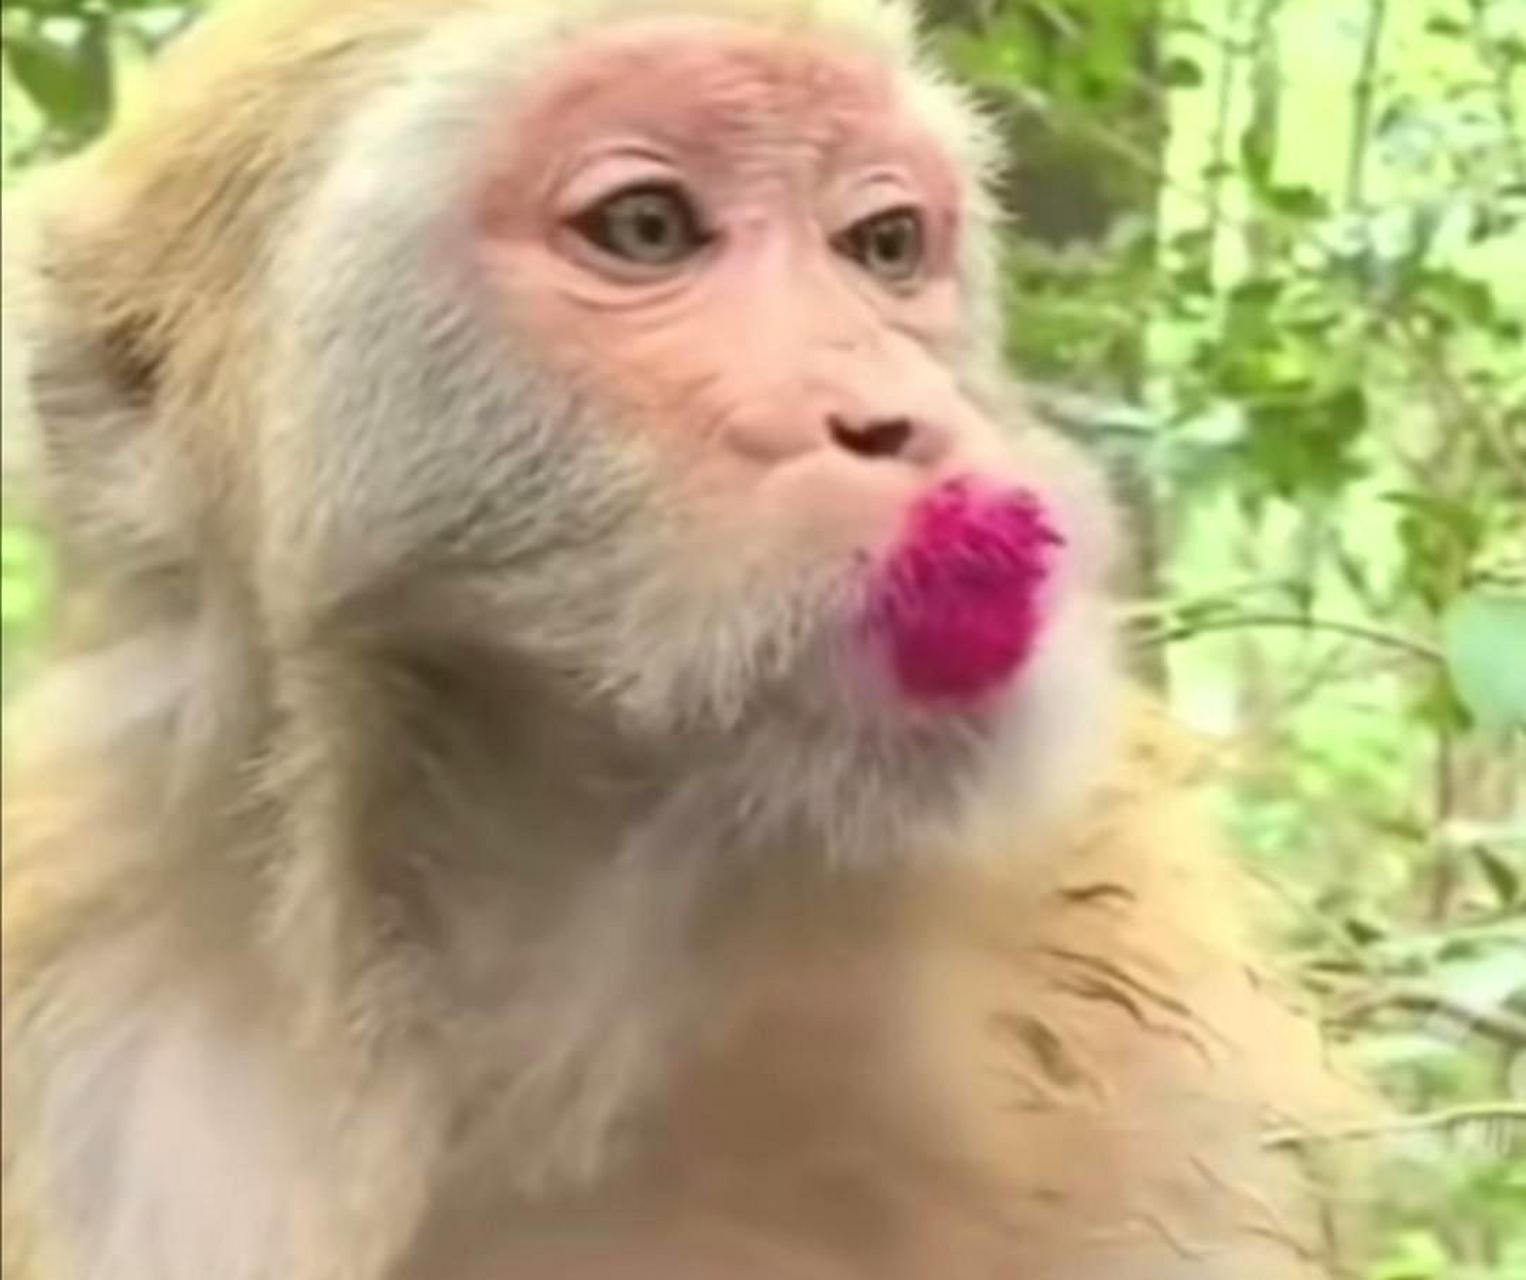 请问这只猴子涂的口红是哪个色号?